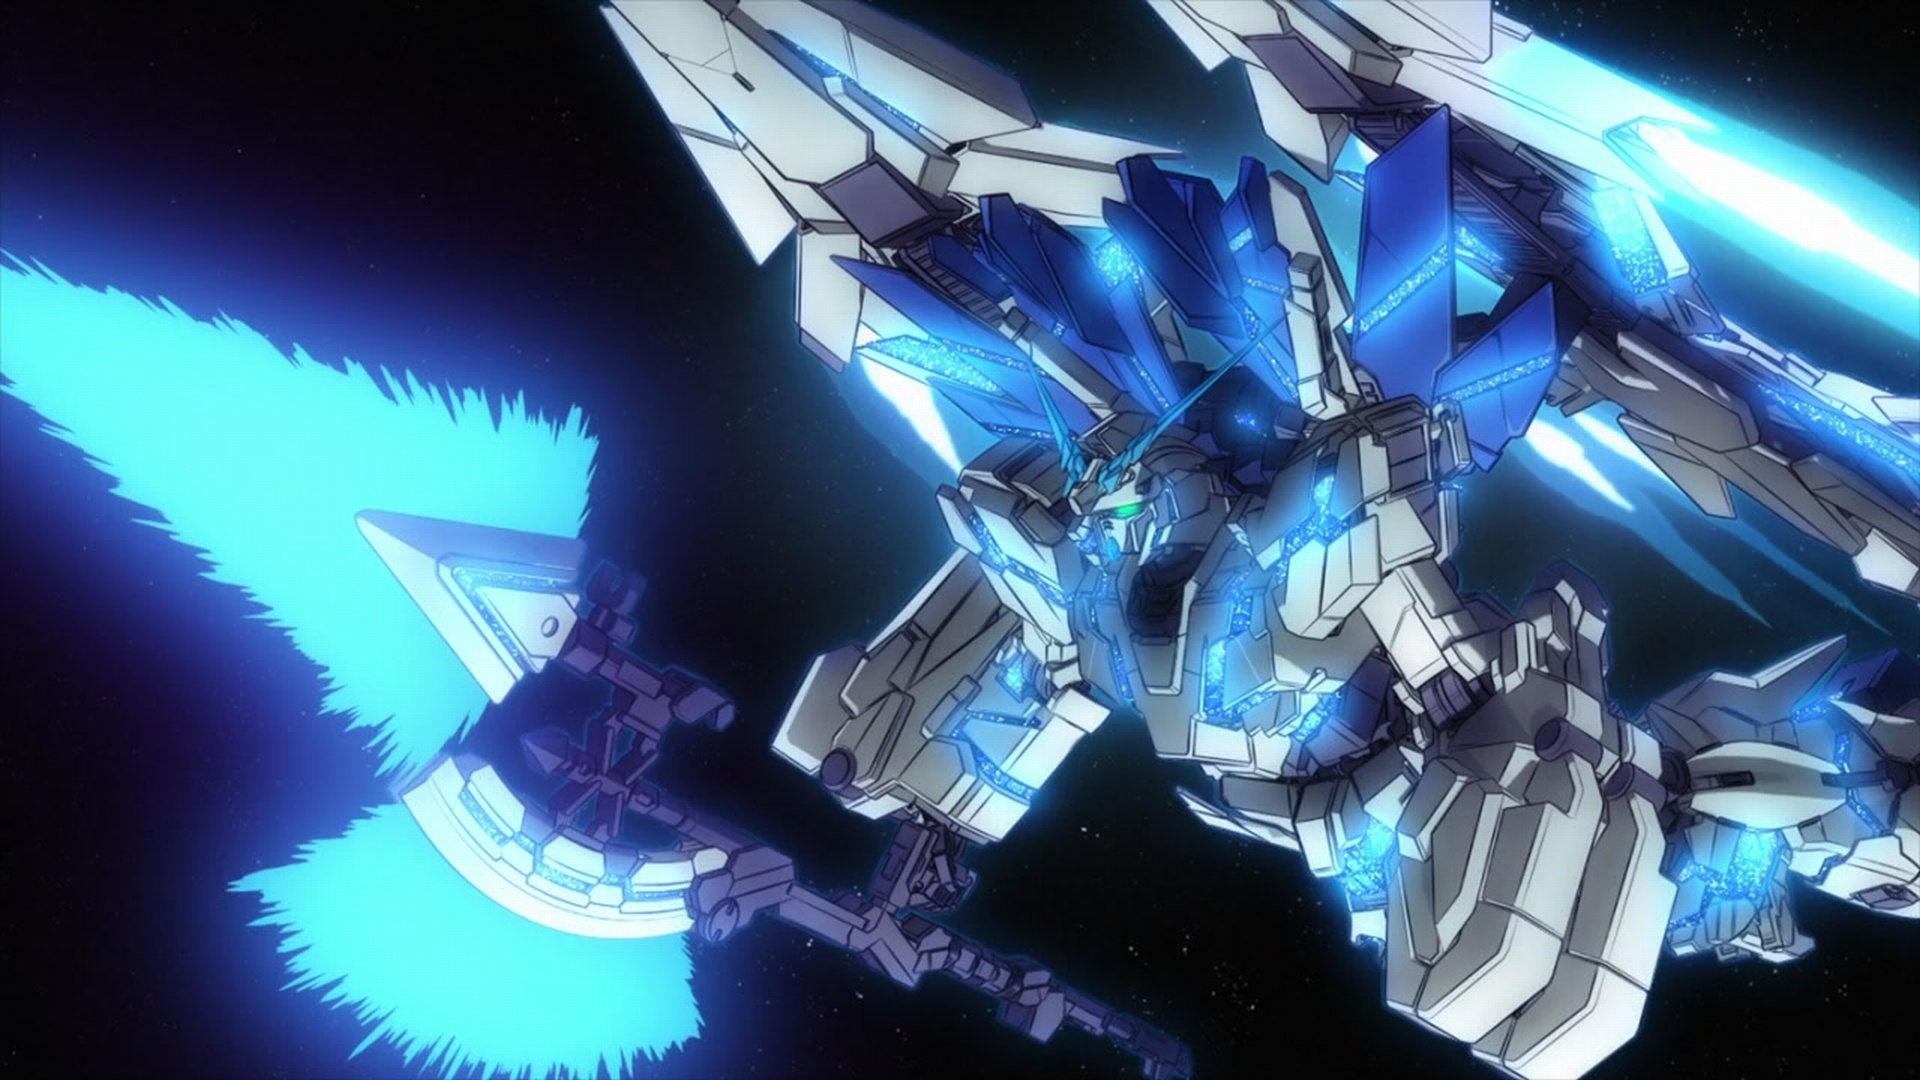 Rx 0 Full Armor Unicorn Gundam Plan B The Gundam Wiki Fandom